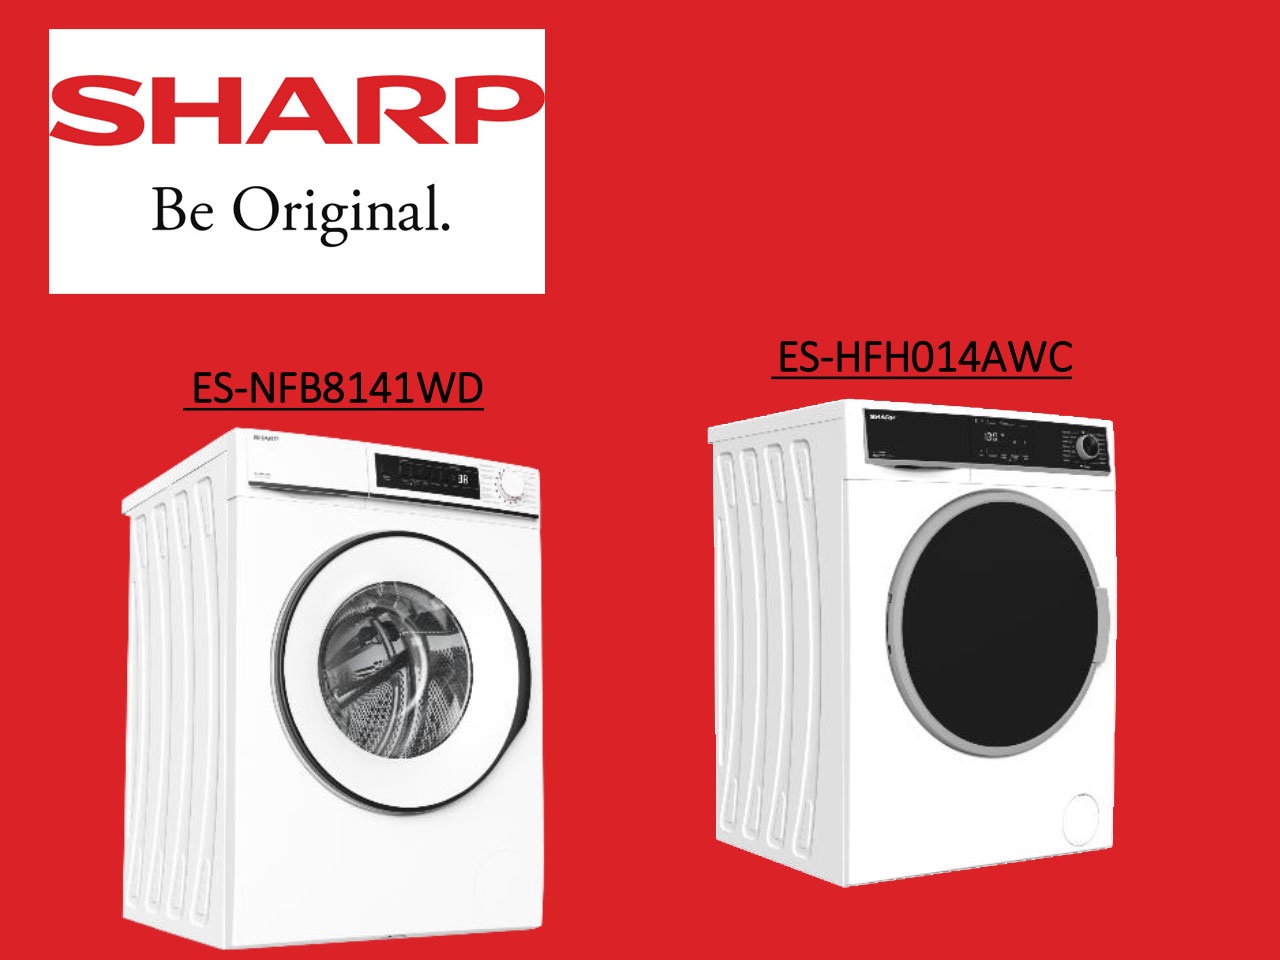 Sharp présente deux modèles de lave-linges !